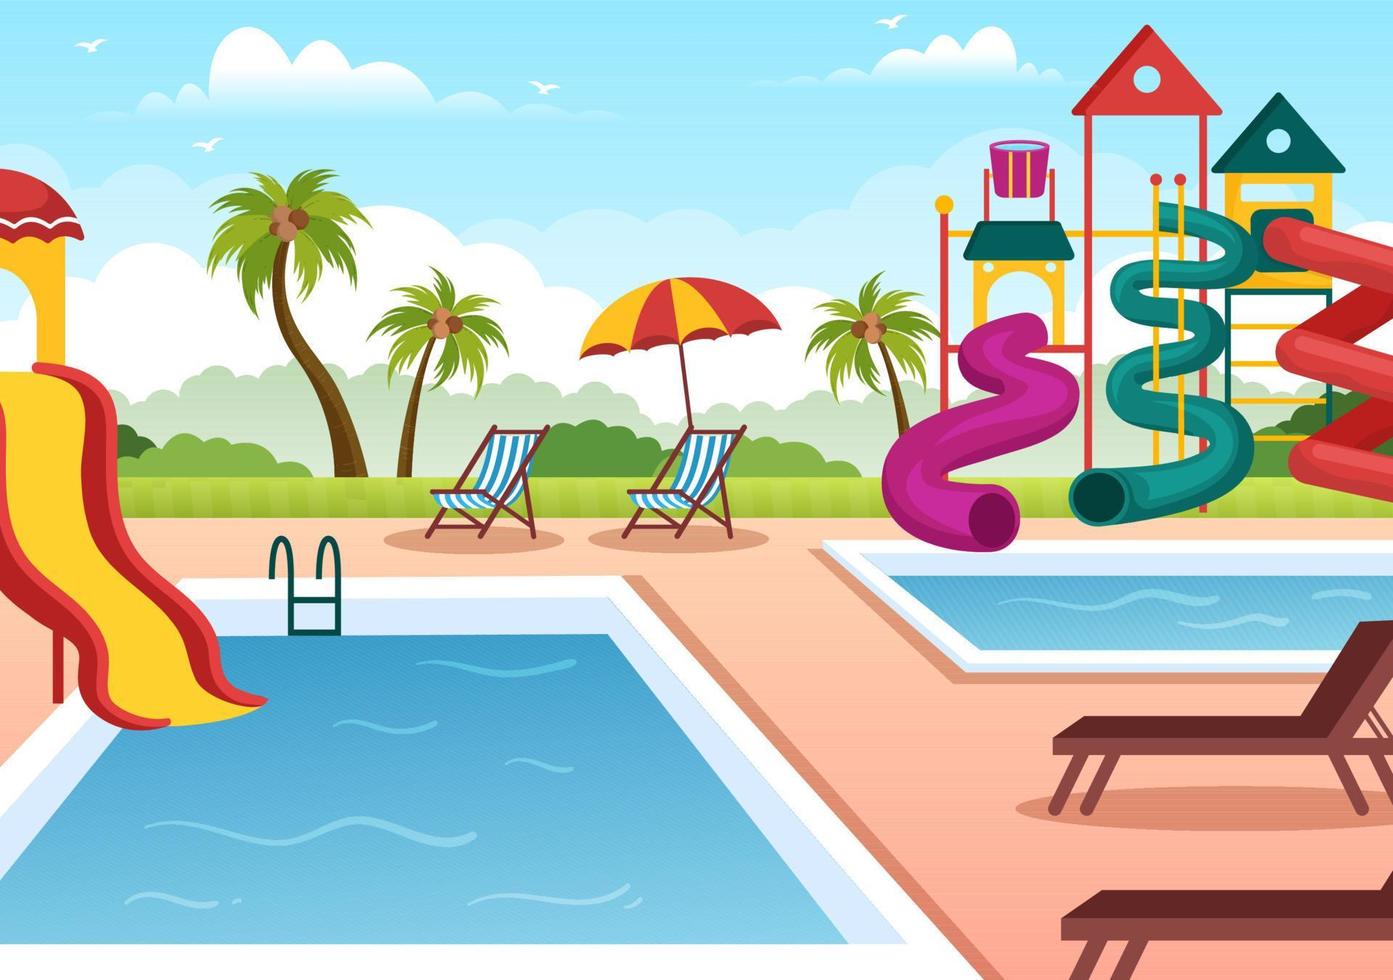 vattenpark med pool, nöjen, rutschkana, palmer för rekreation och utomhuslekplats i platt tecknad illustration vektor